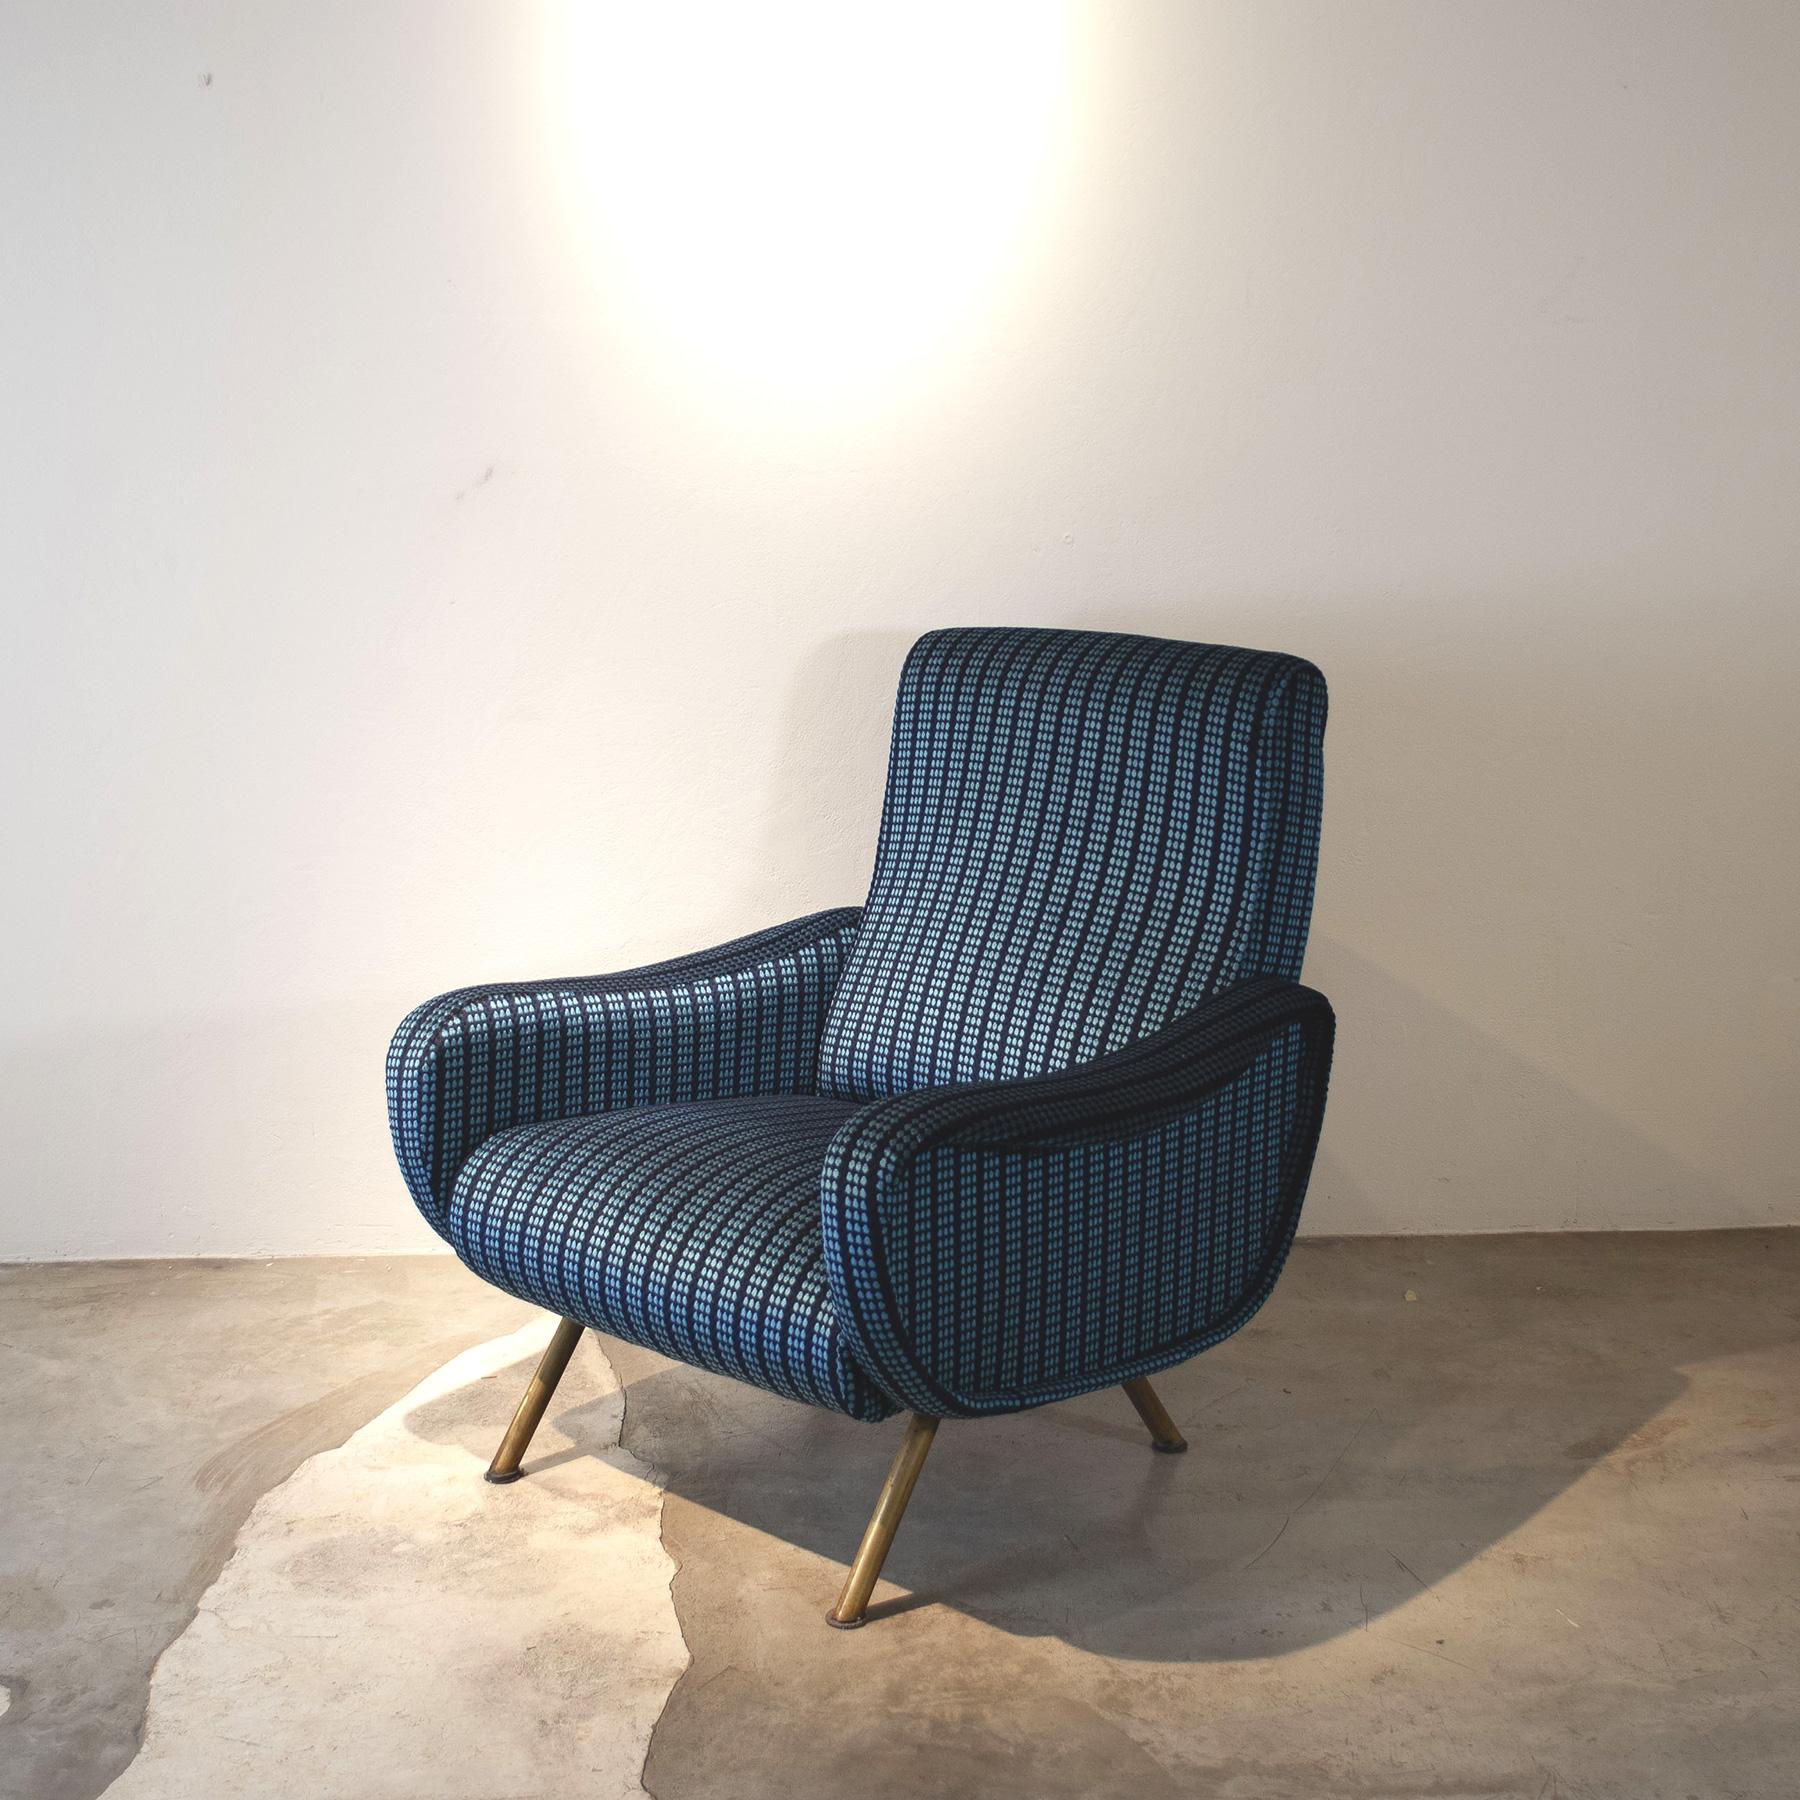 Ein zeitloses Muss, das immer noch produziert wird, ist dieser Vintage-Sessel namens Lady von Meisterdesigner Marco Zanuso für Arflex aus den 1960er Jahren.

Marco Zanuso (Mailand, 14. Mai 1916 - Mailand, 11. Juli 2001) war ein italienischer